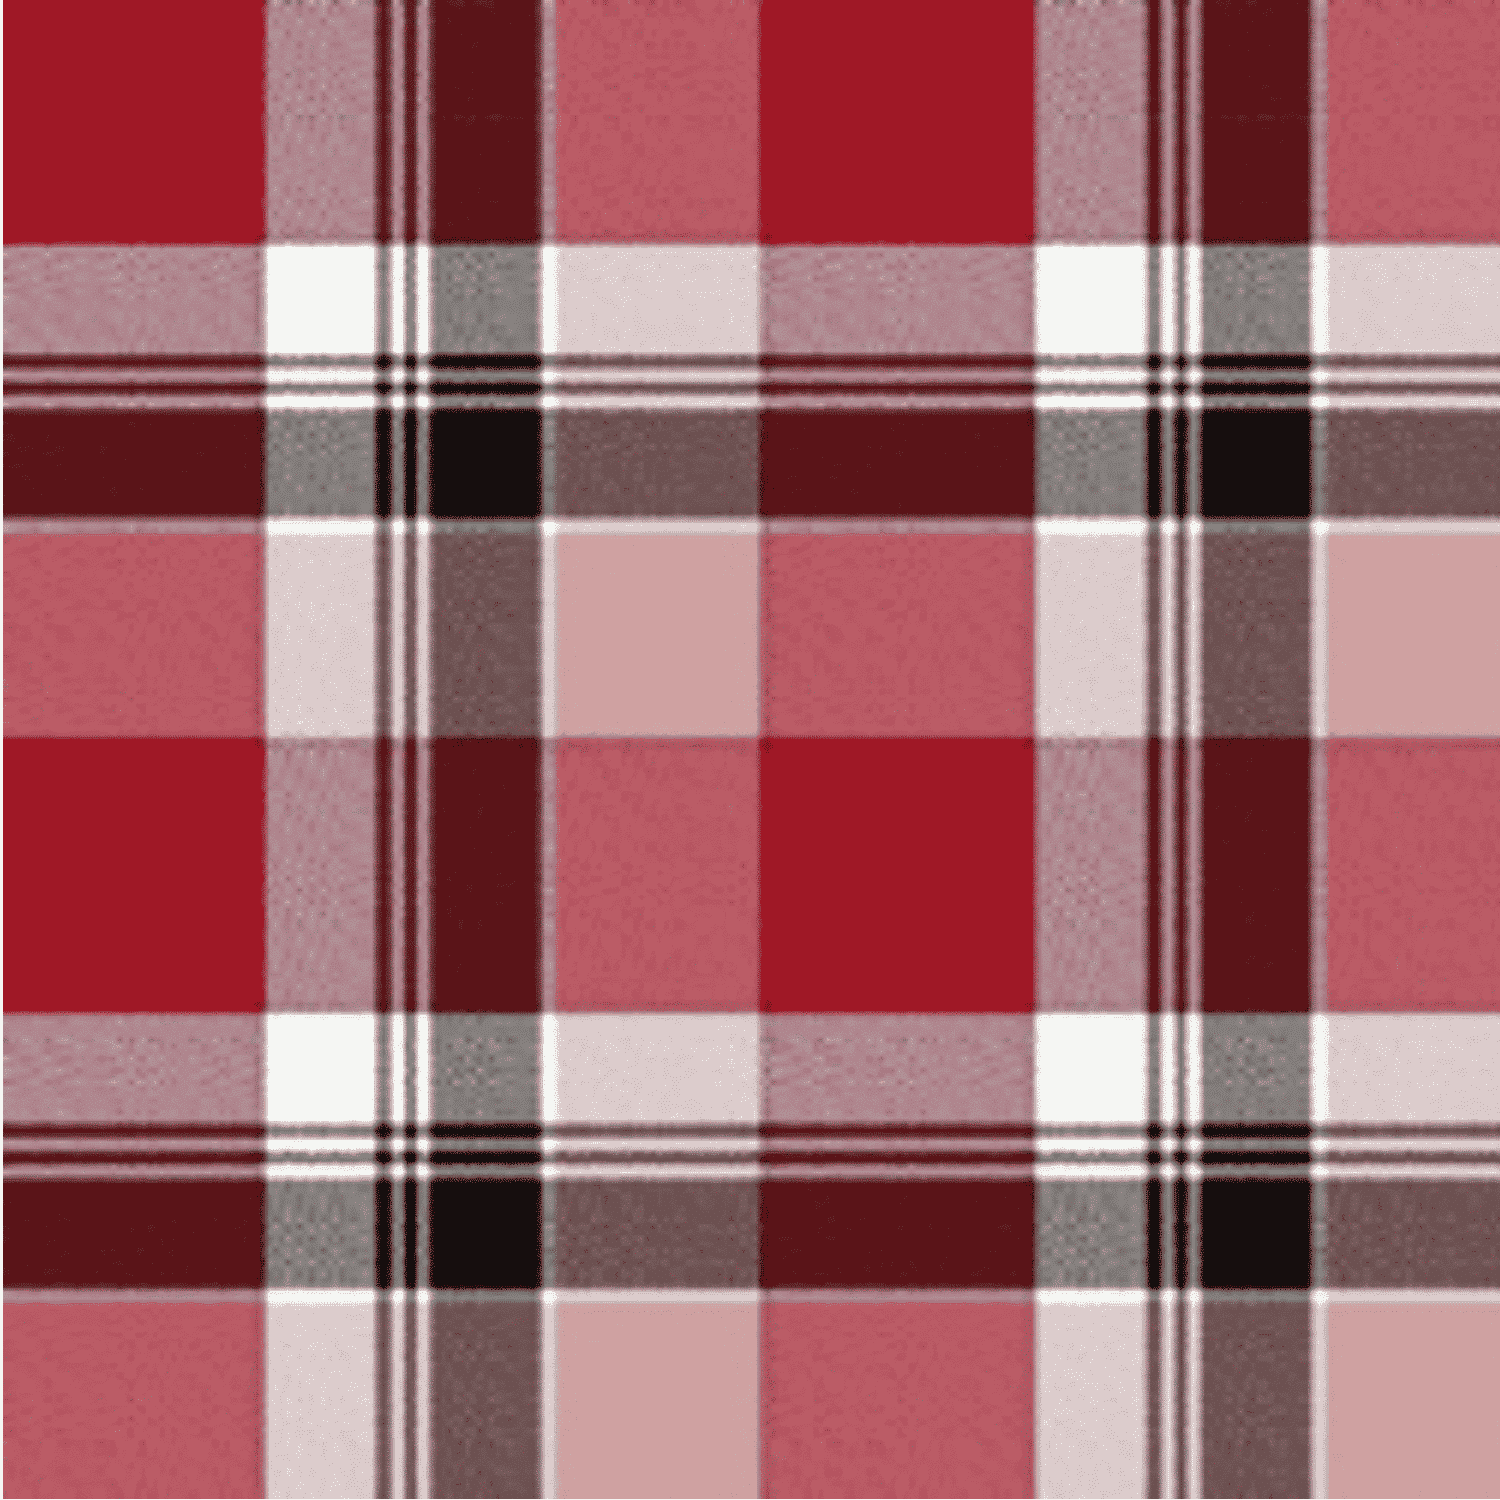 coperta-kros-rossa-scozzese-pile-calda-morbida-invernale-dettaglio